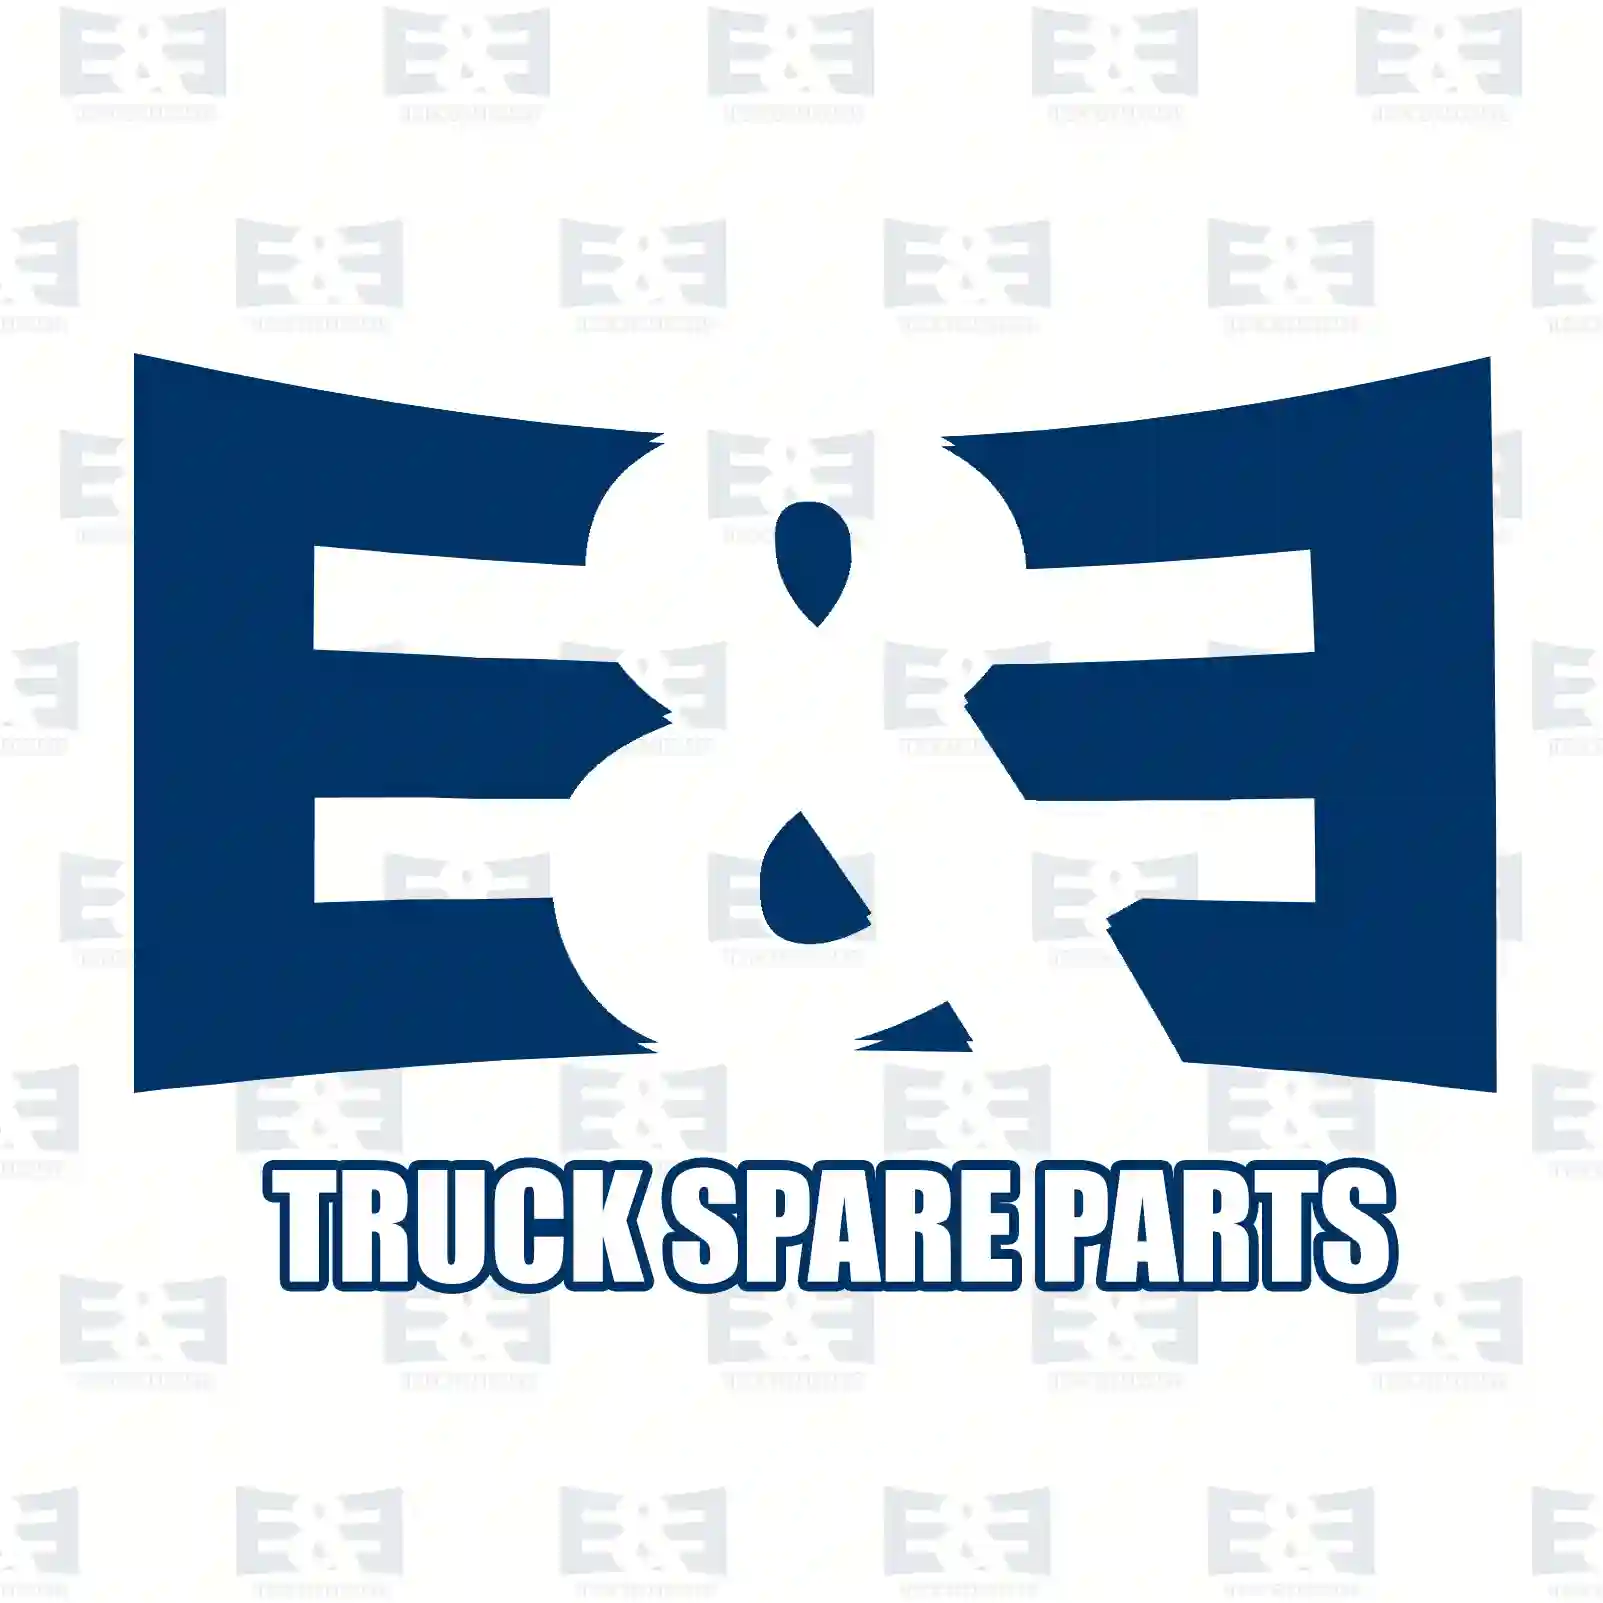 Turbocharger, 2E2206095, 1854858, 2007972, 2080645 ||  2E2206095 E&E Truck Spare Parts | Truck Spare Parts, Auotomotive Spare Parts Turbocharger, 2E2206095, 1854858, 2007972, 2080645 ||  2E2206095 E&E Truck Spare Parts | Truck Spare Parts, Auotomotive Spare Parts